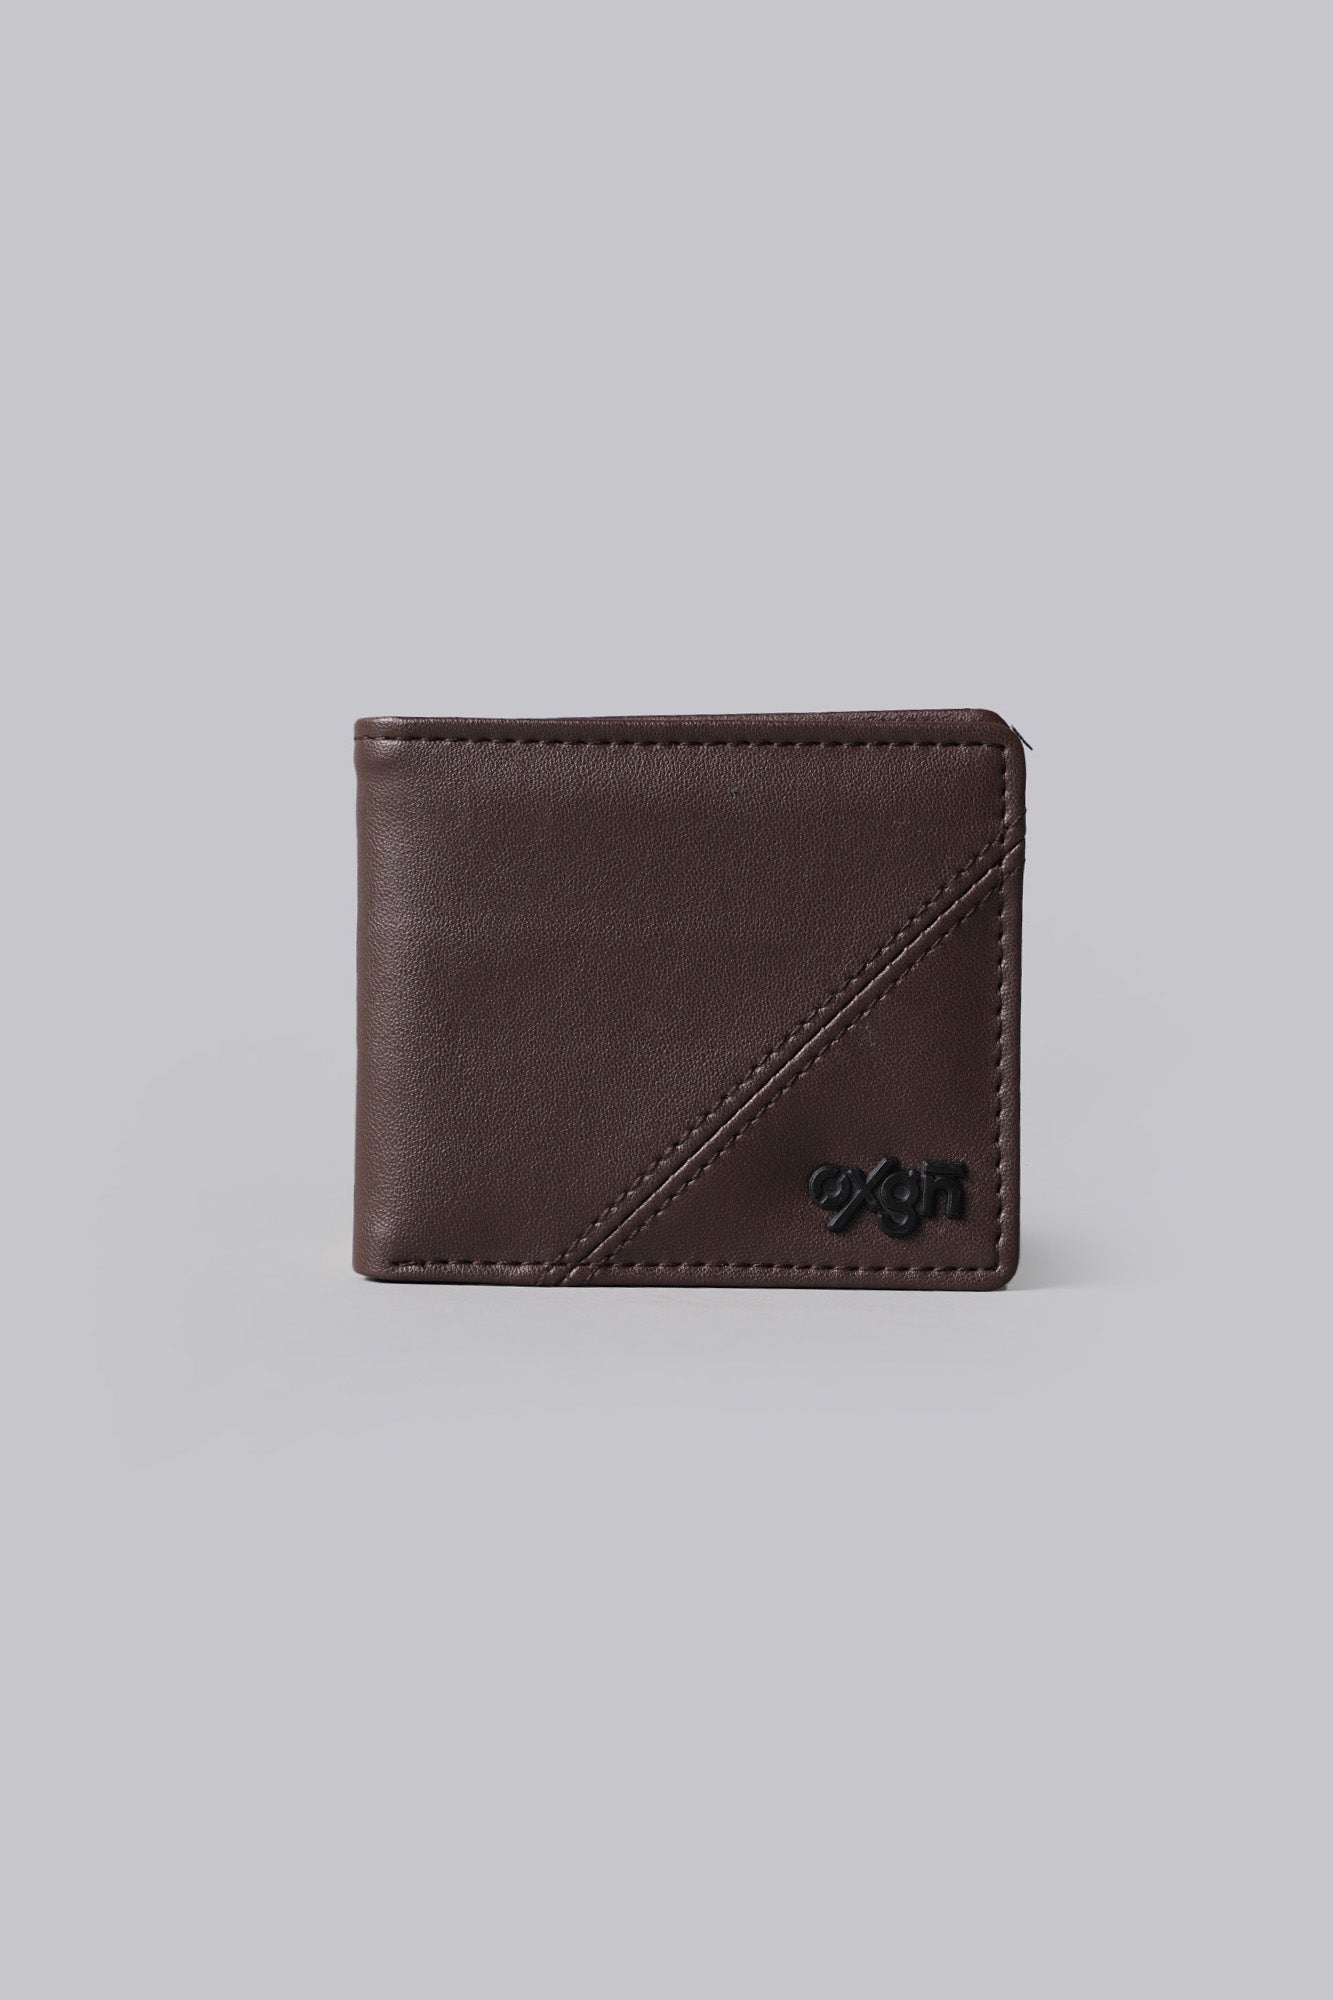 OXGN Bi-Fold Wallet